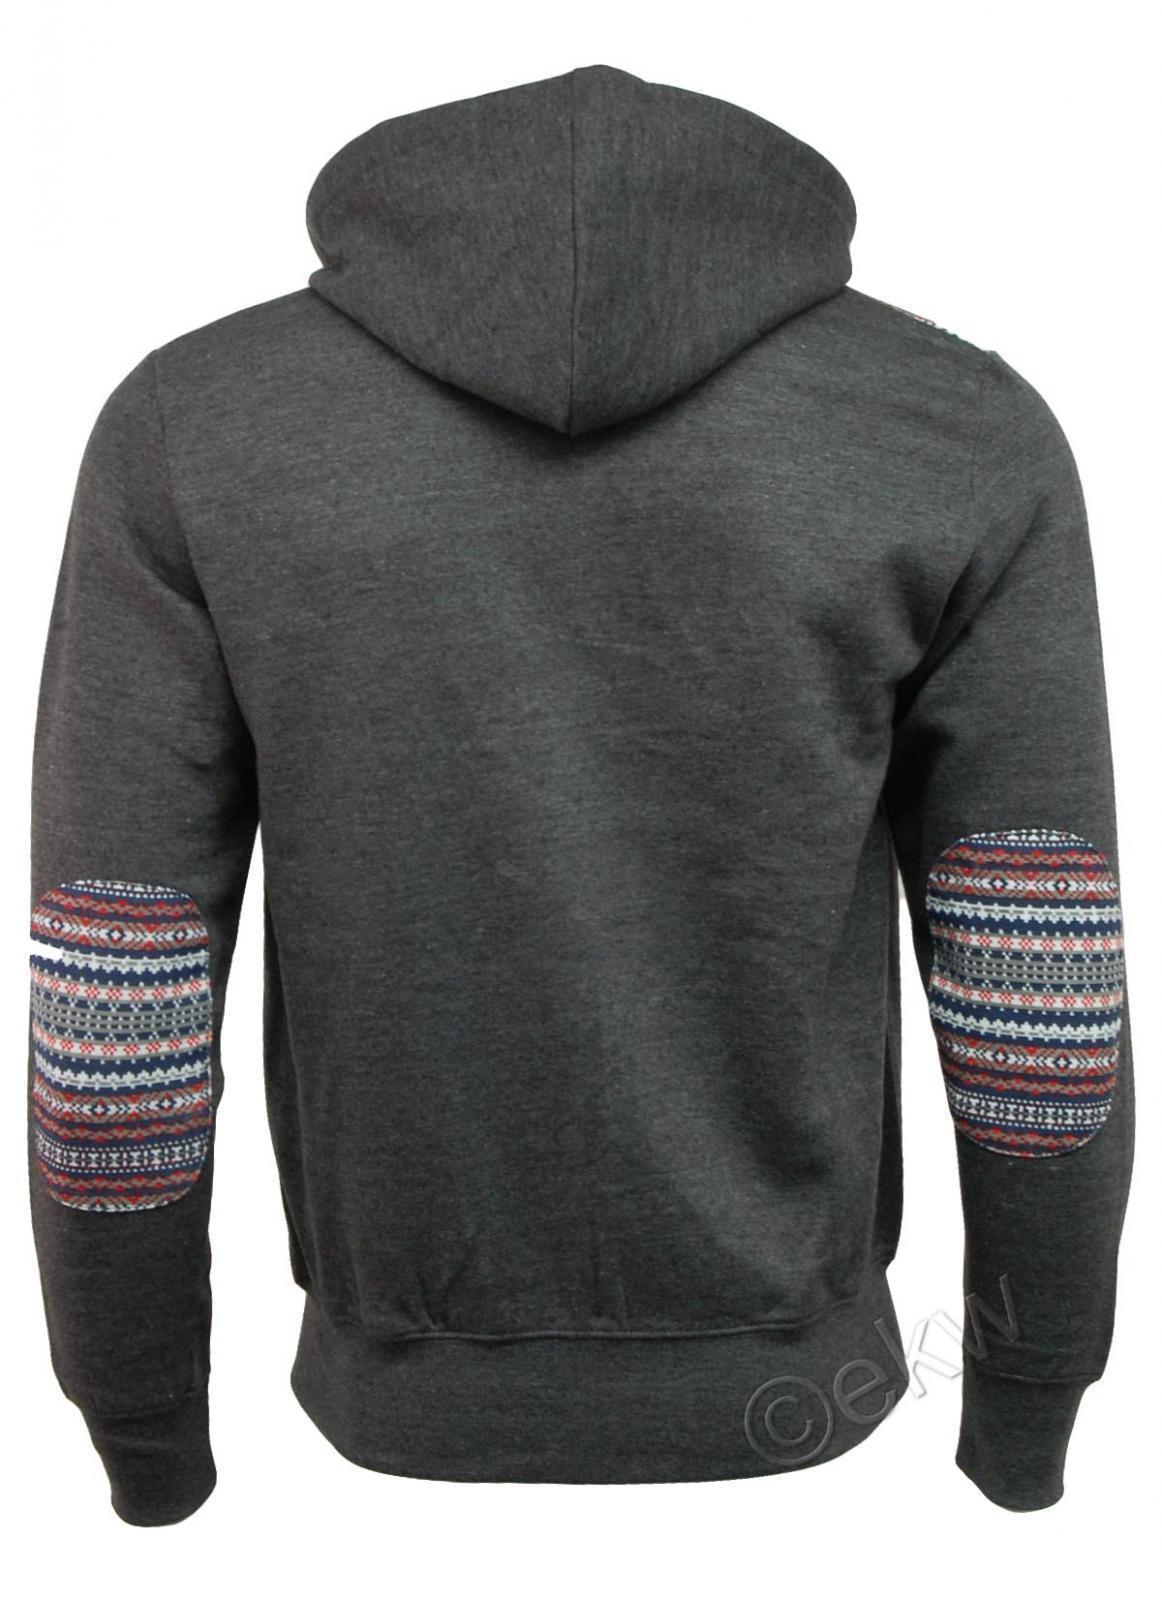 Mens Aztec Print Patch Hooded / Hoodie Sweatshirt Jacket Top - C18 | eBay